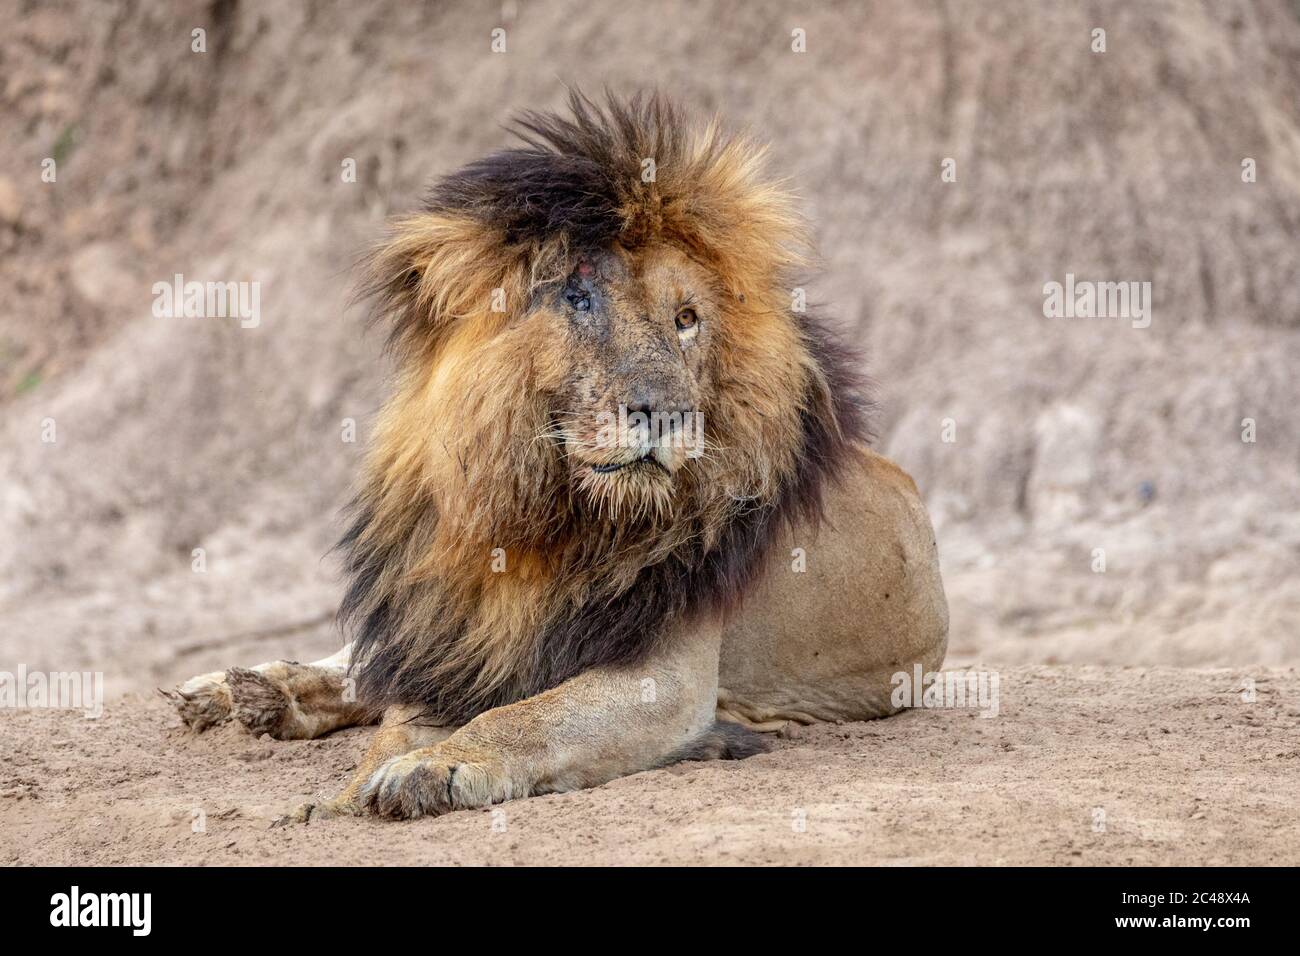 Le lion mâle a appelé cicatrice en raison de ses yeux endommagés, allongé sur le sable par la rivière Mara à Masai Mara Kenya Banque D'Images